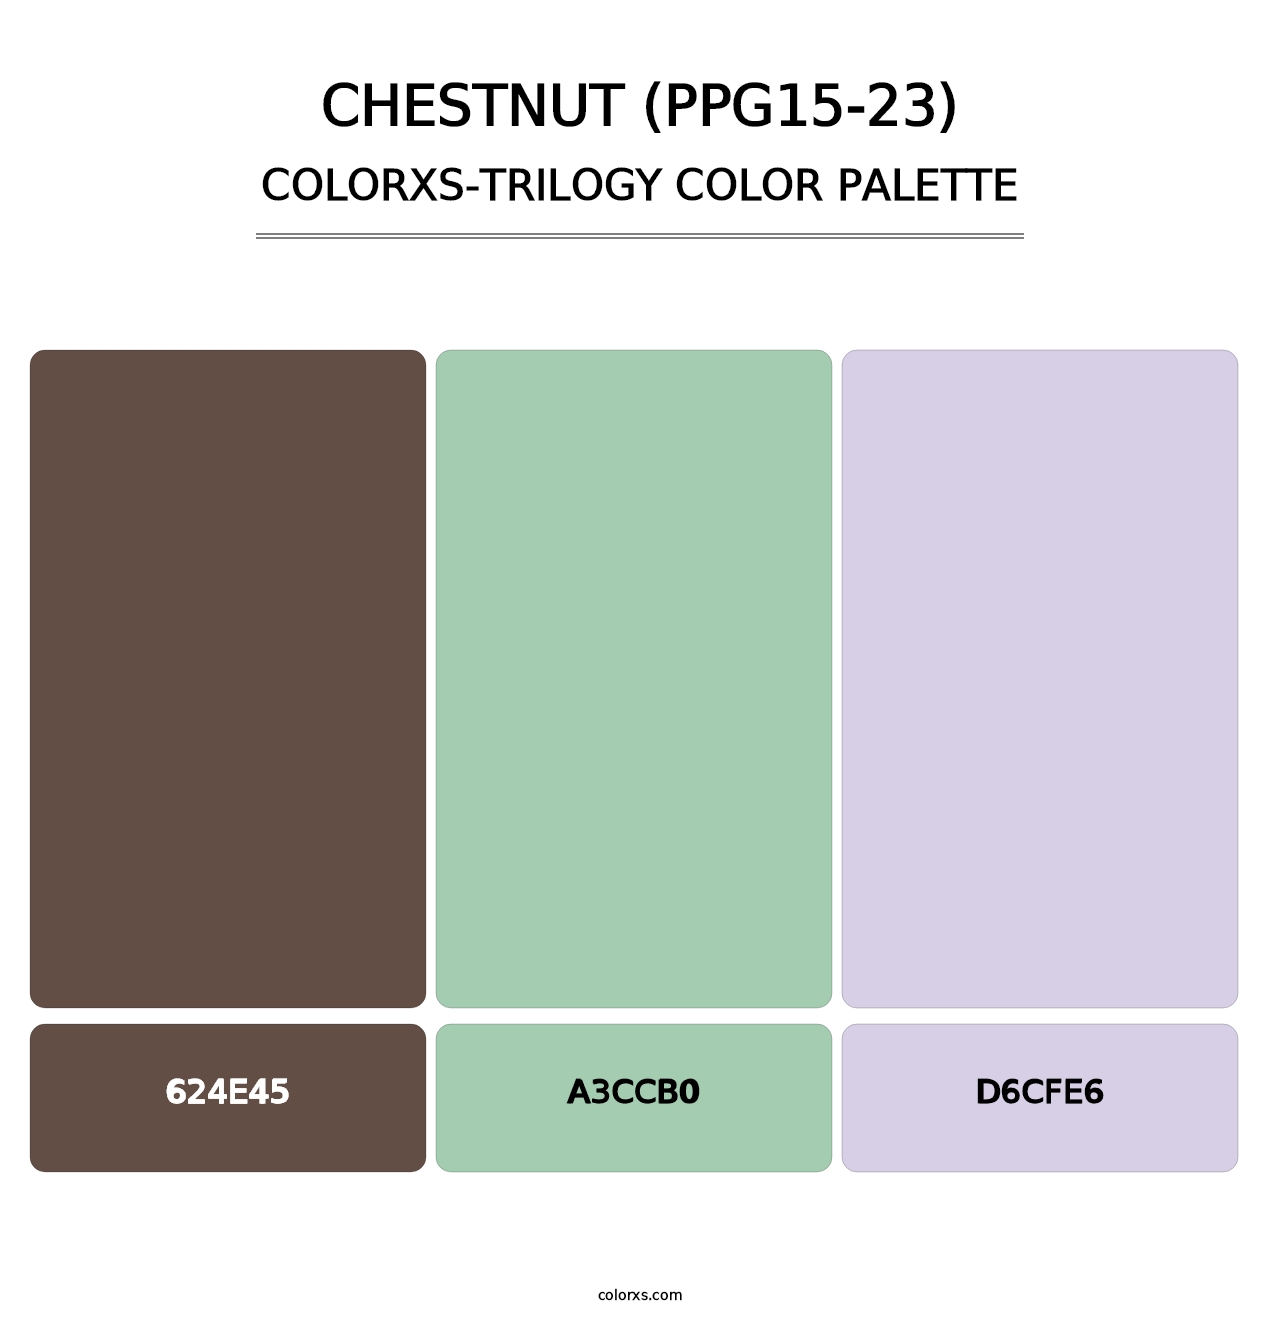 Chestnut (PPG15-23) - Colorxs Trilogy Palette